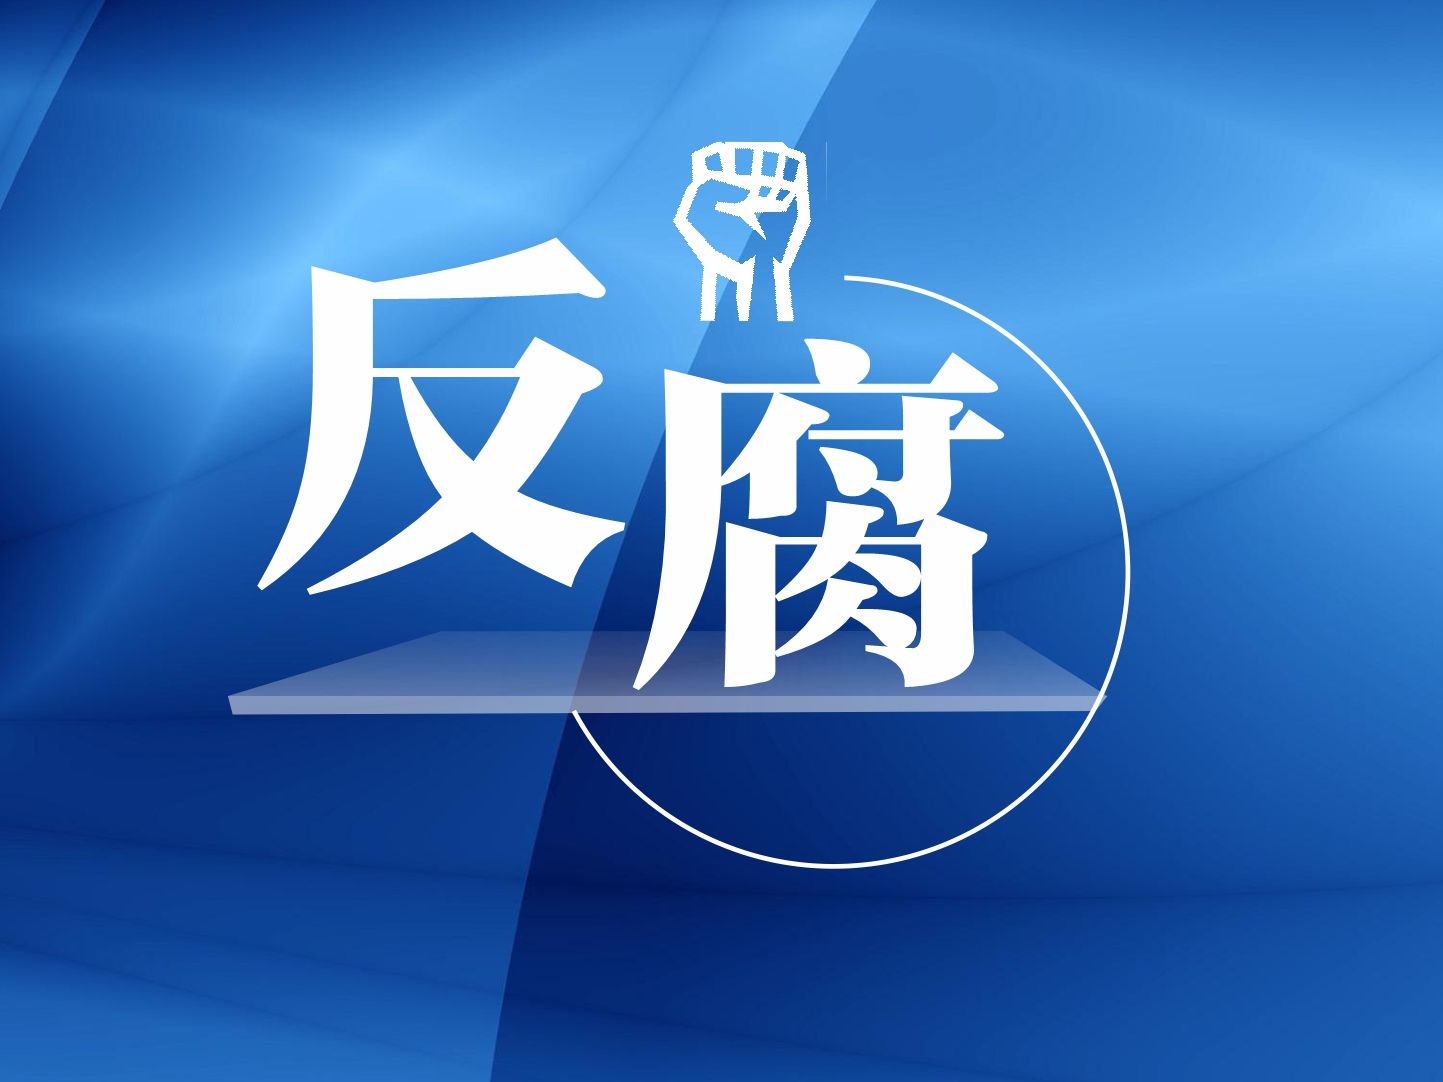 湛江市委原常委、市政府原党组成员陈光祥严重违纪违法被开除党籍和公职